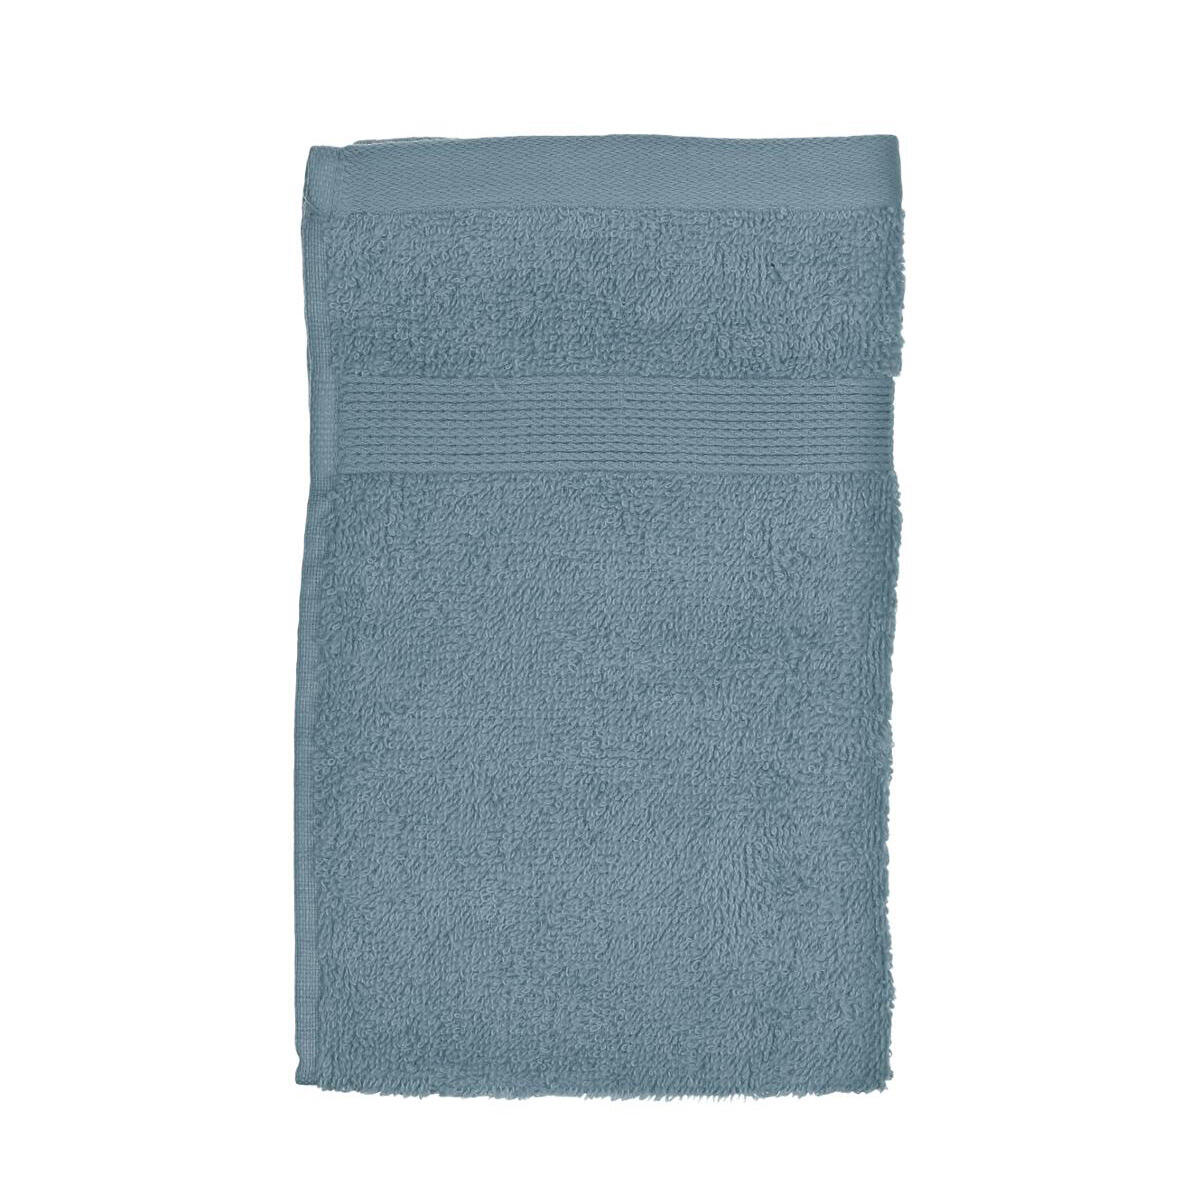 Handtuch (30 x 50 cm) Krista Graublau 1